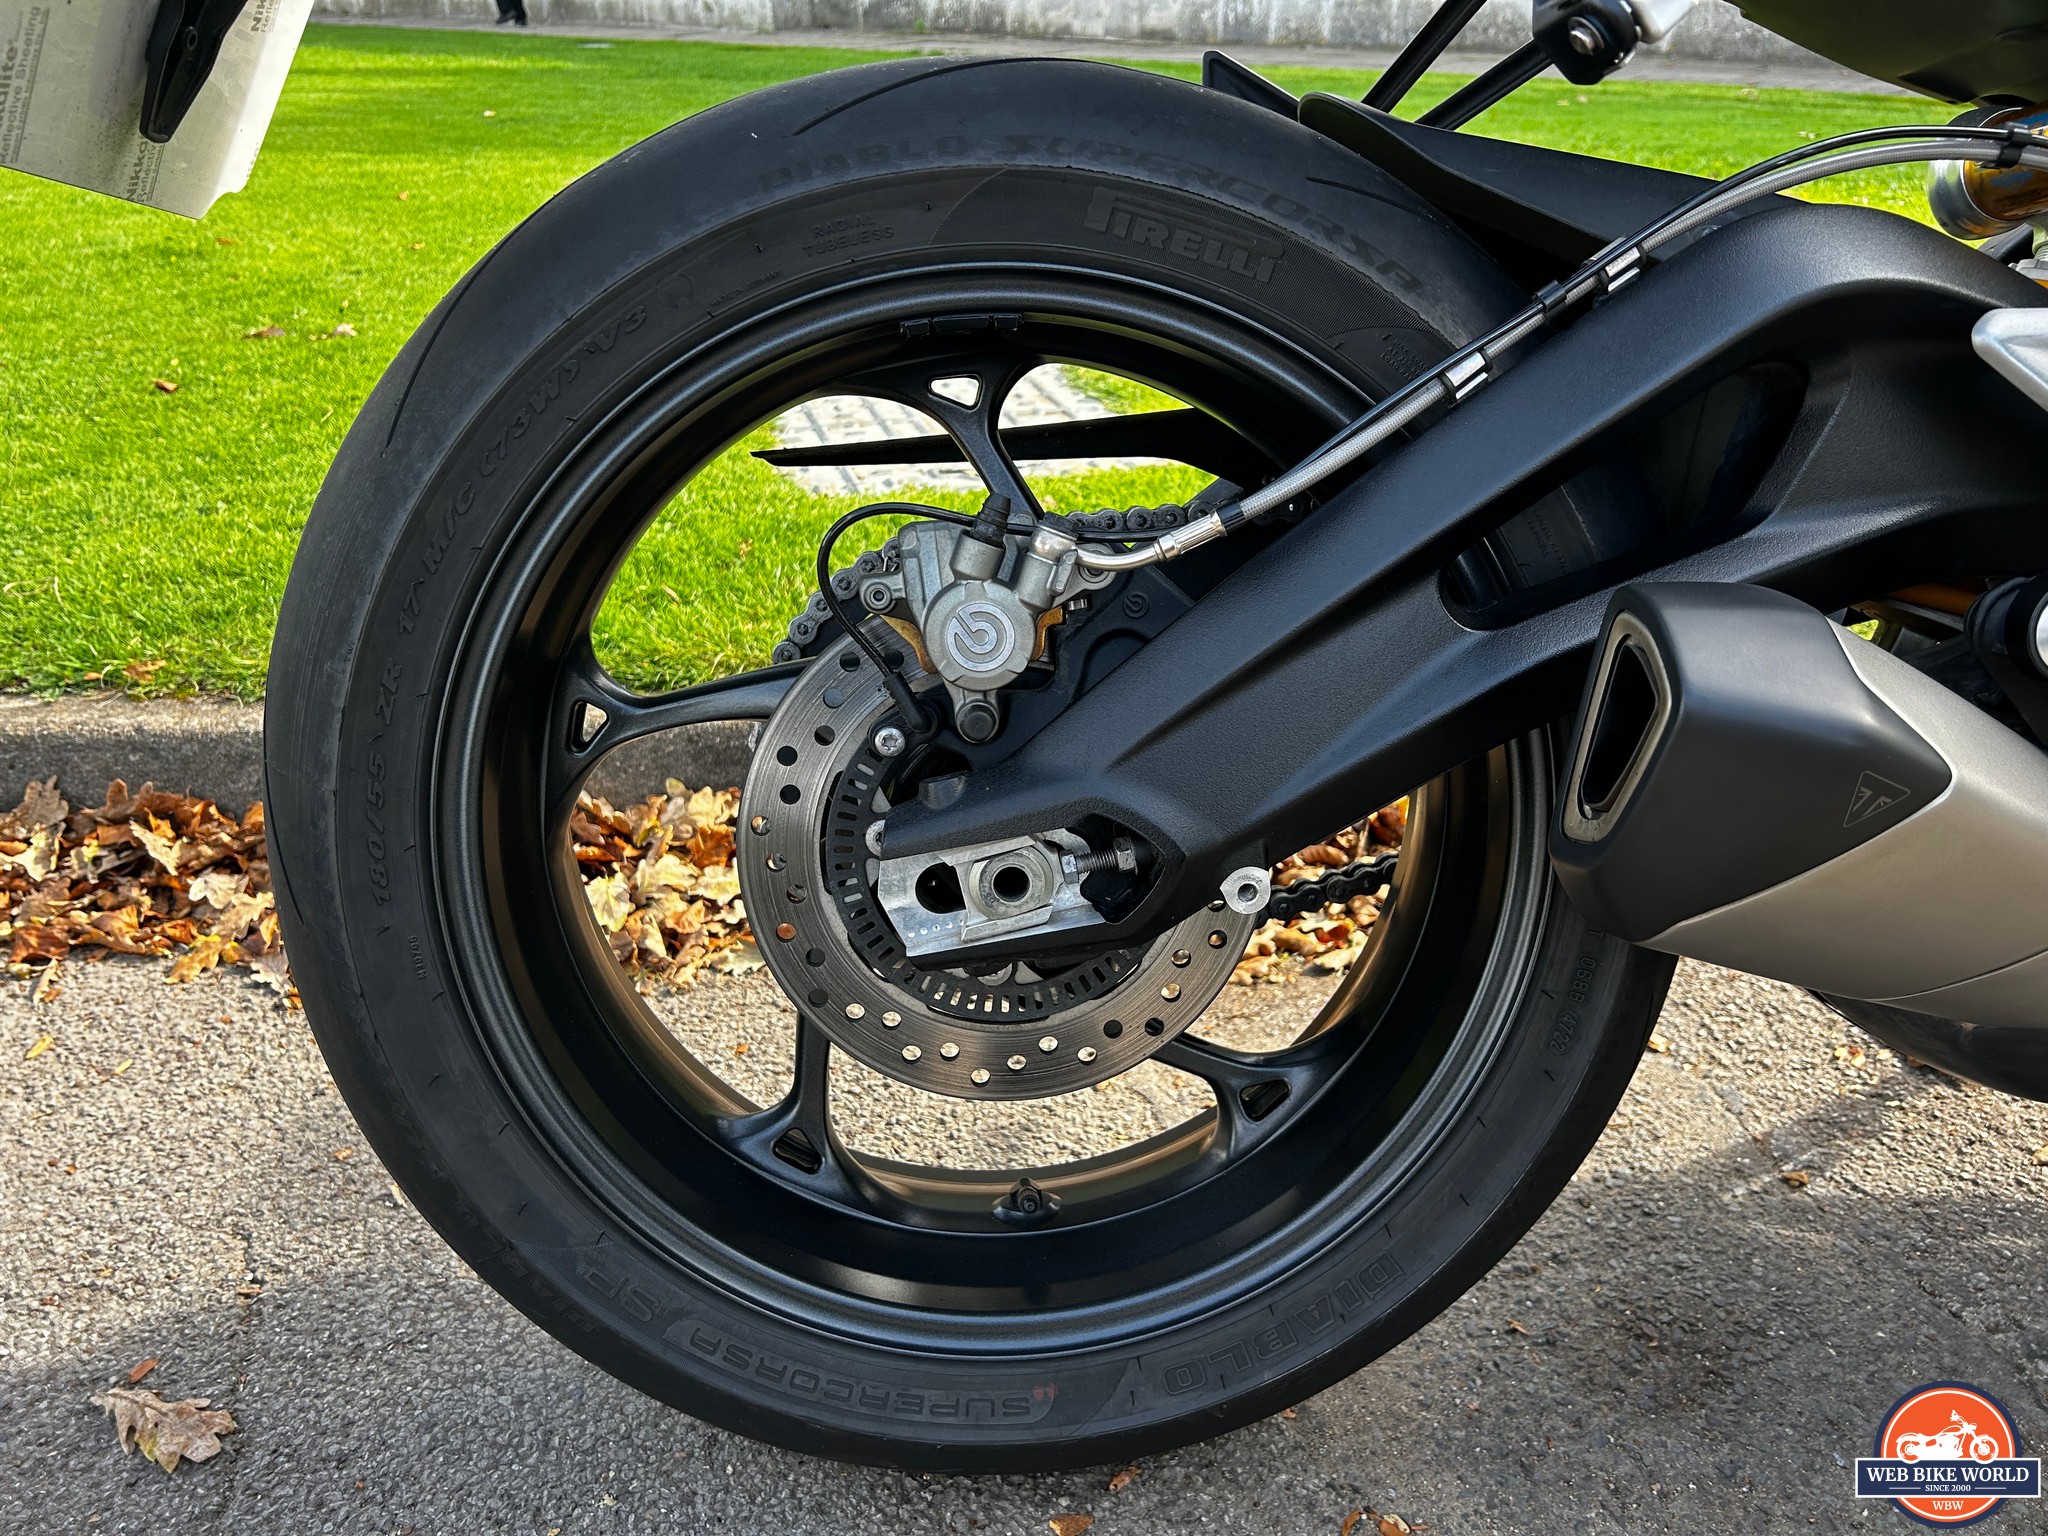 Rear wheel with Pirelli Diablo Supercora SP tires